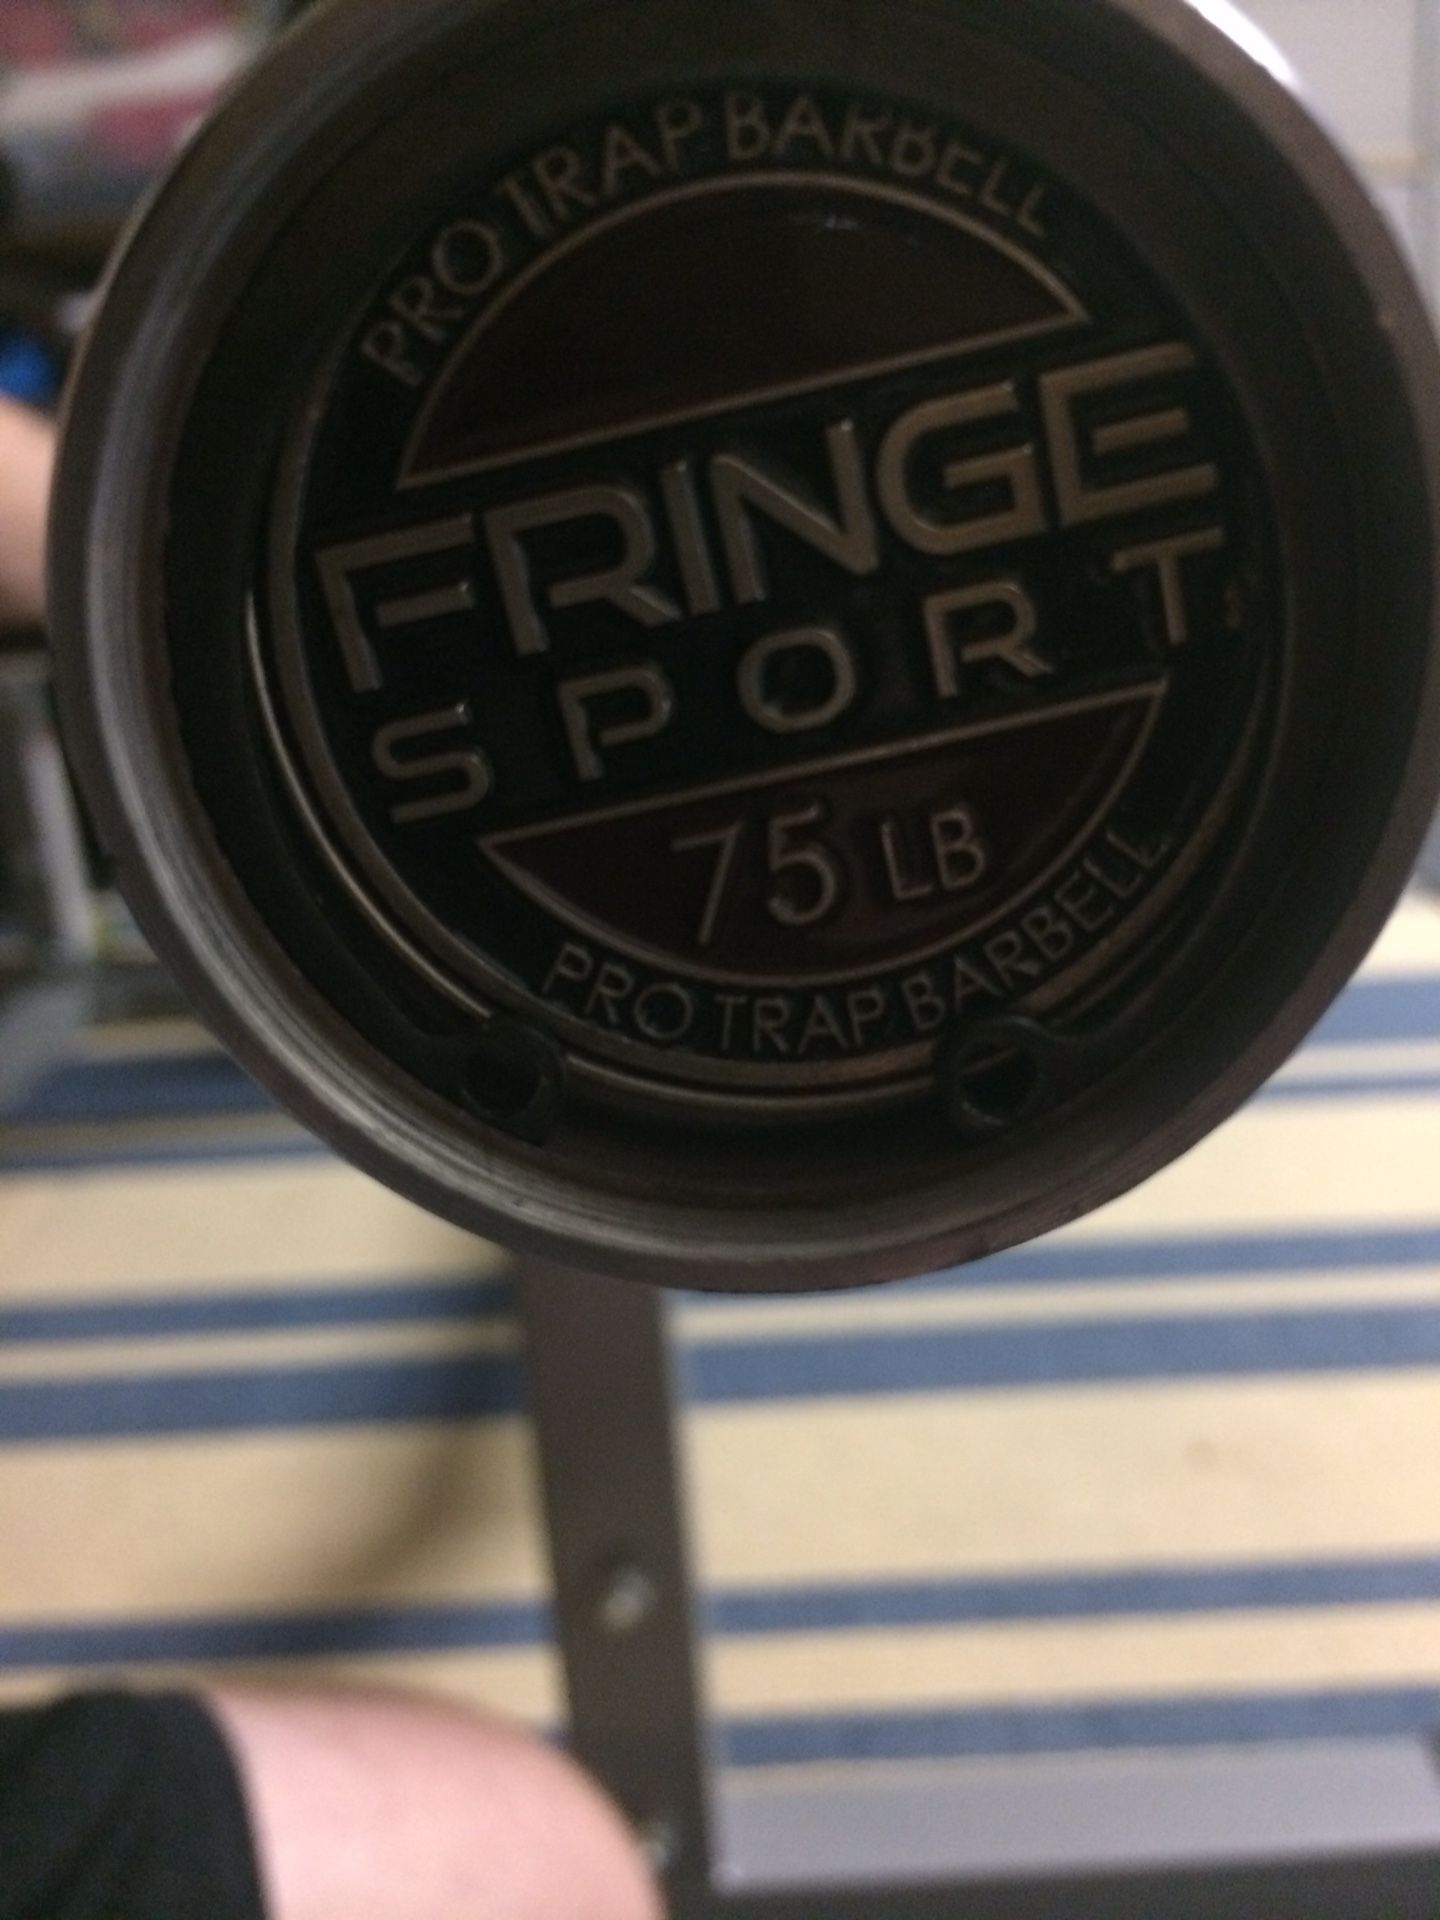 Fringe sport mega hex/trap bar